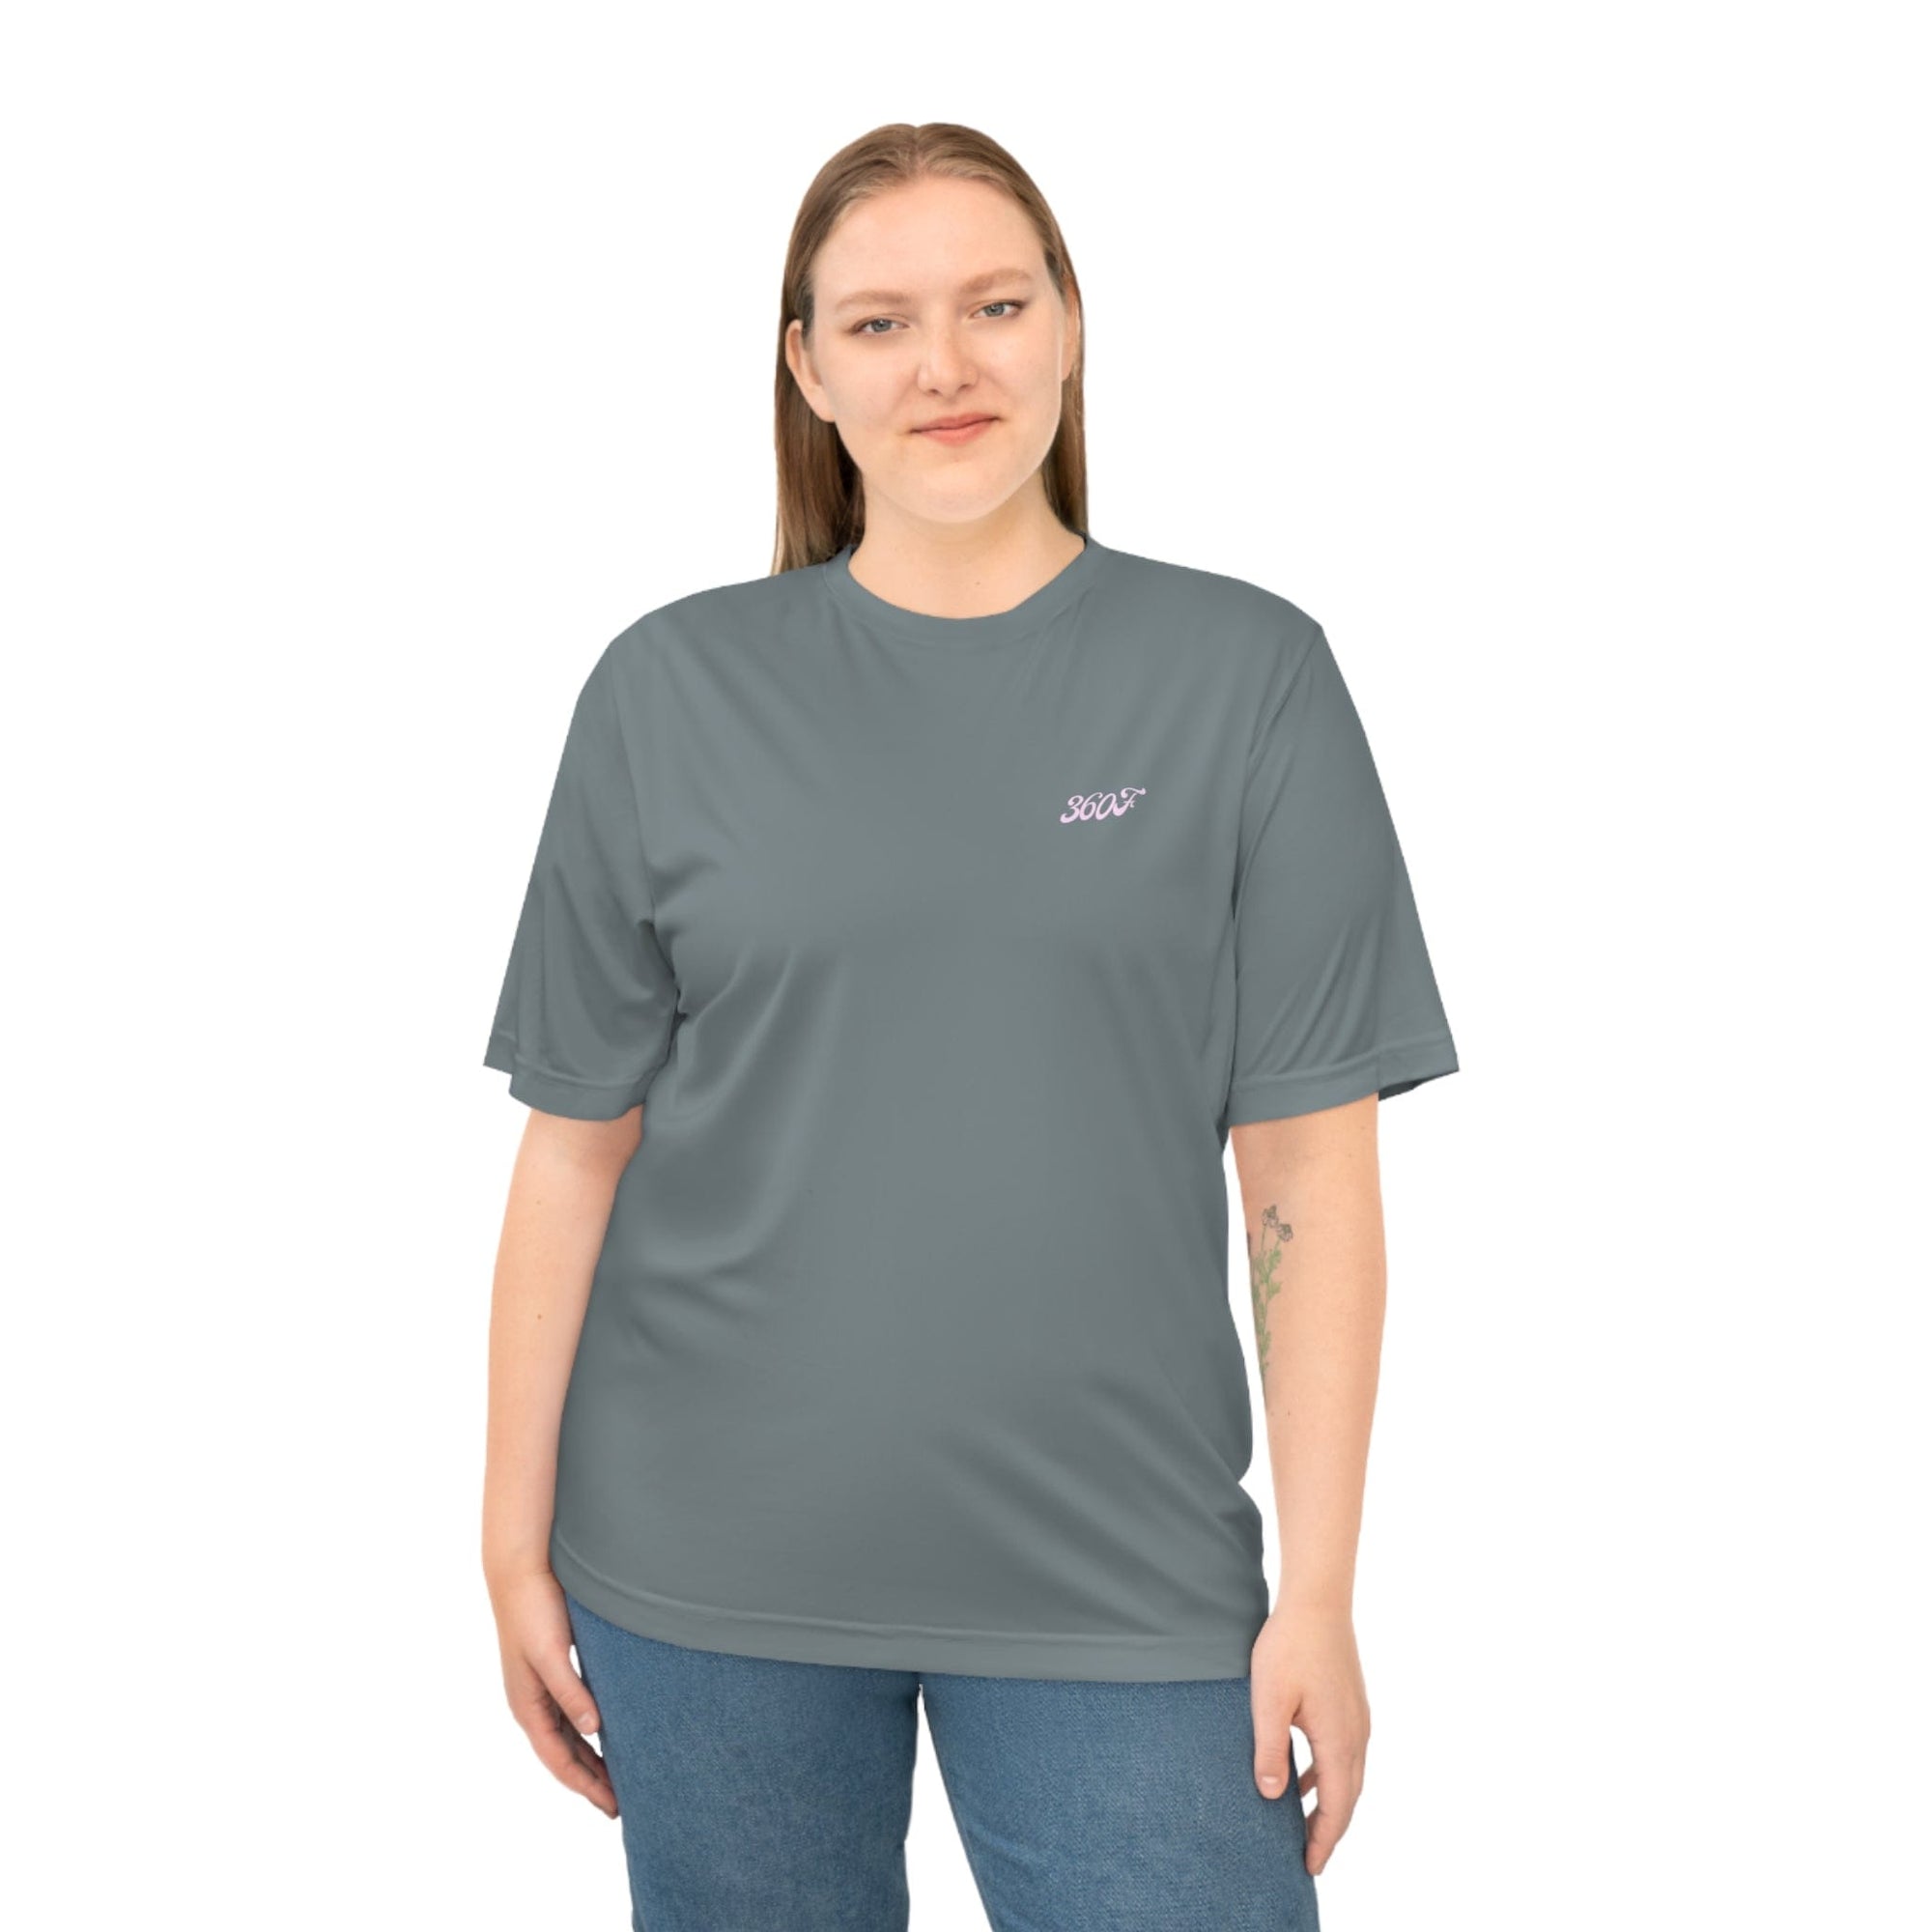 Printify T-Shirt 360Football Exklusives Performance T-Shirt Grau